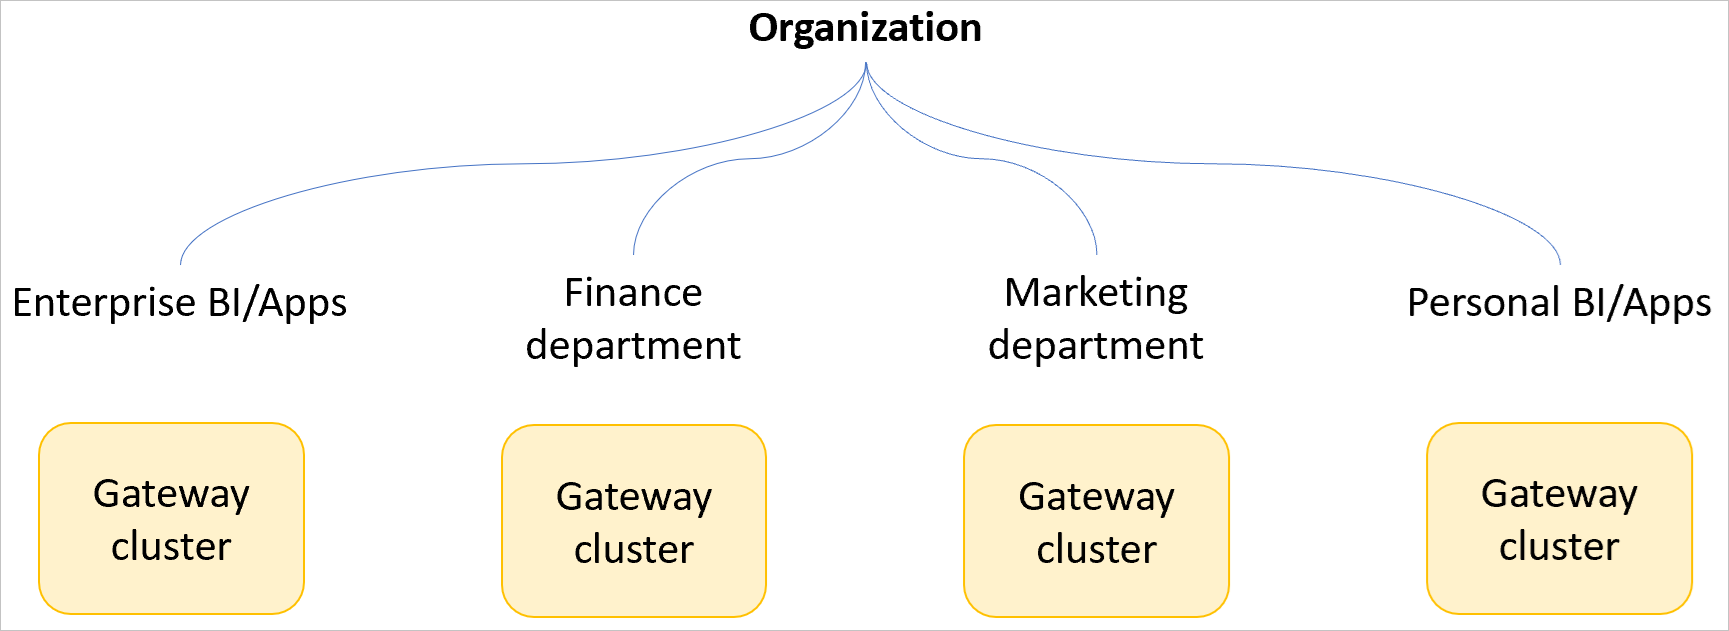 Bilde av en eksempelorganisasjon med separate gateway-klynger for enterprise BI og apper, finansavdelingen, markedsføringsavdelingen og personlig BI og apper.